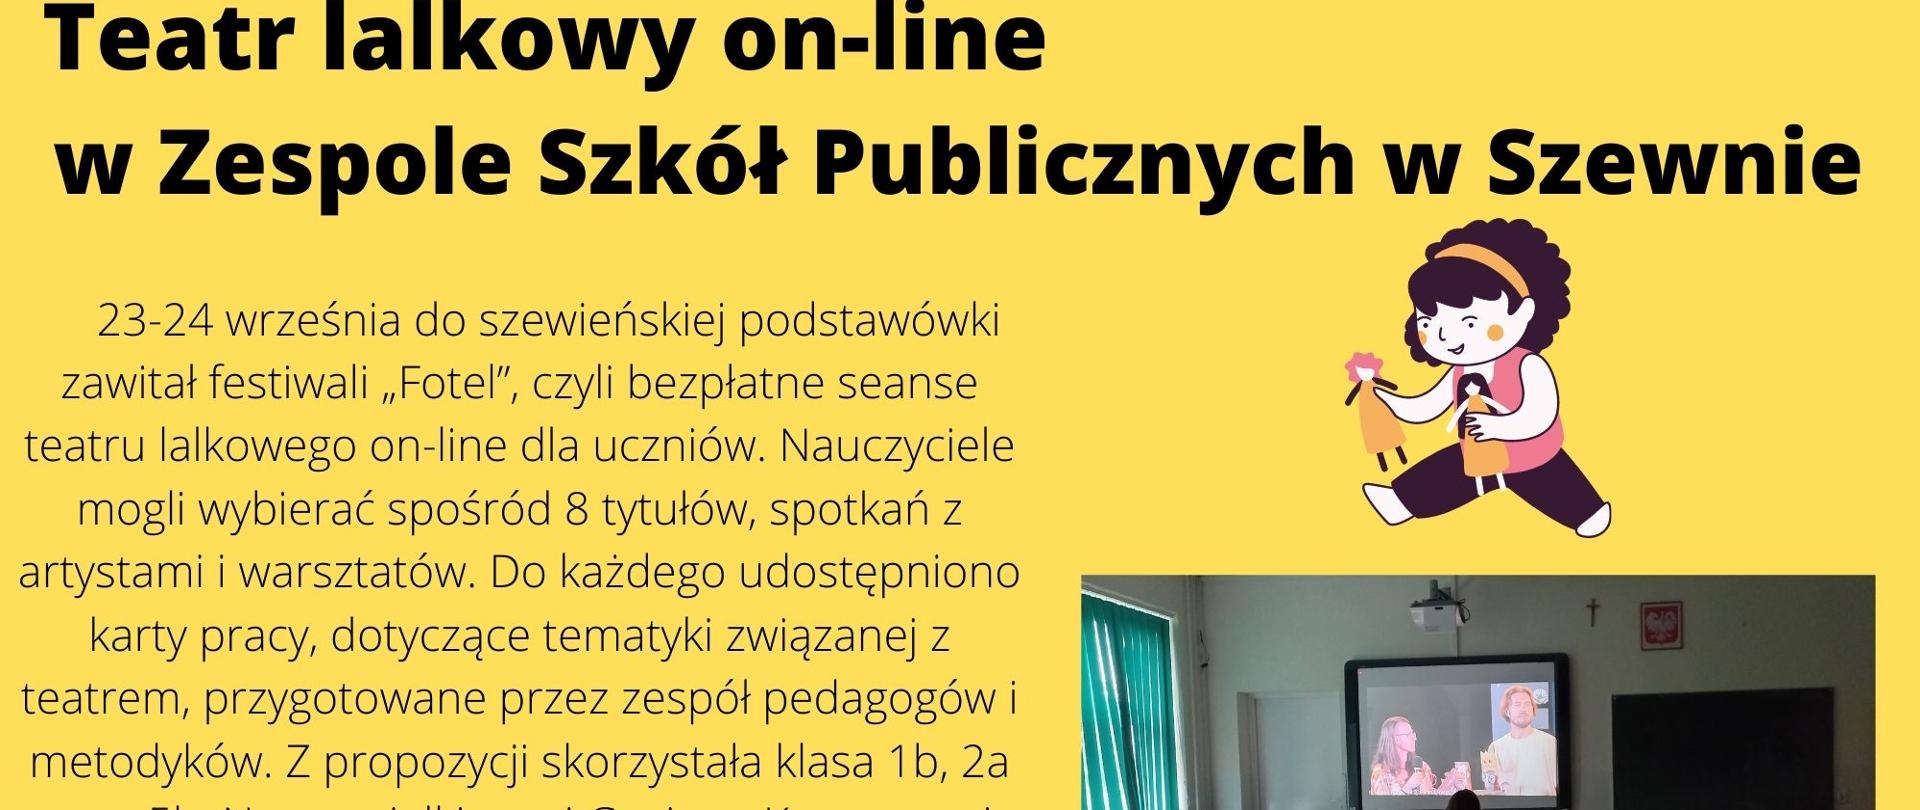 Teatr lalkowy on-line w Zespole Szkół Publicznych w Szewnie